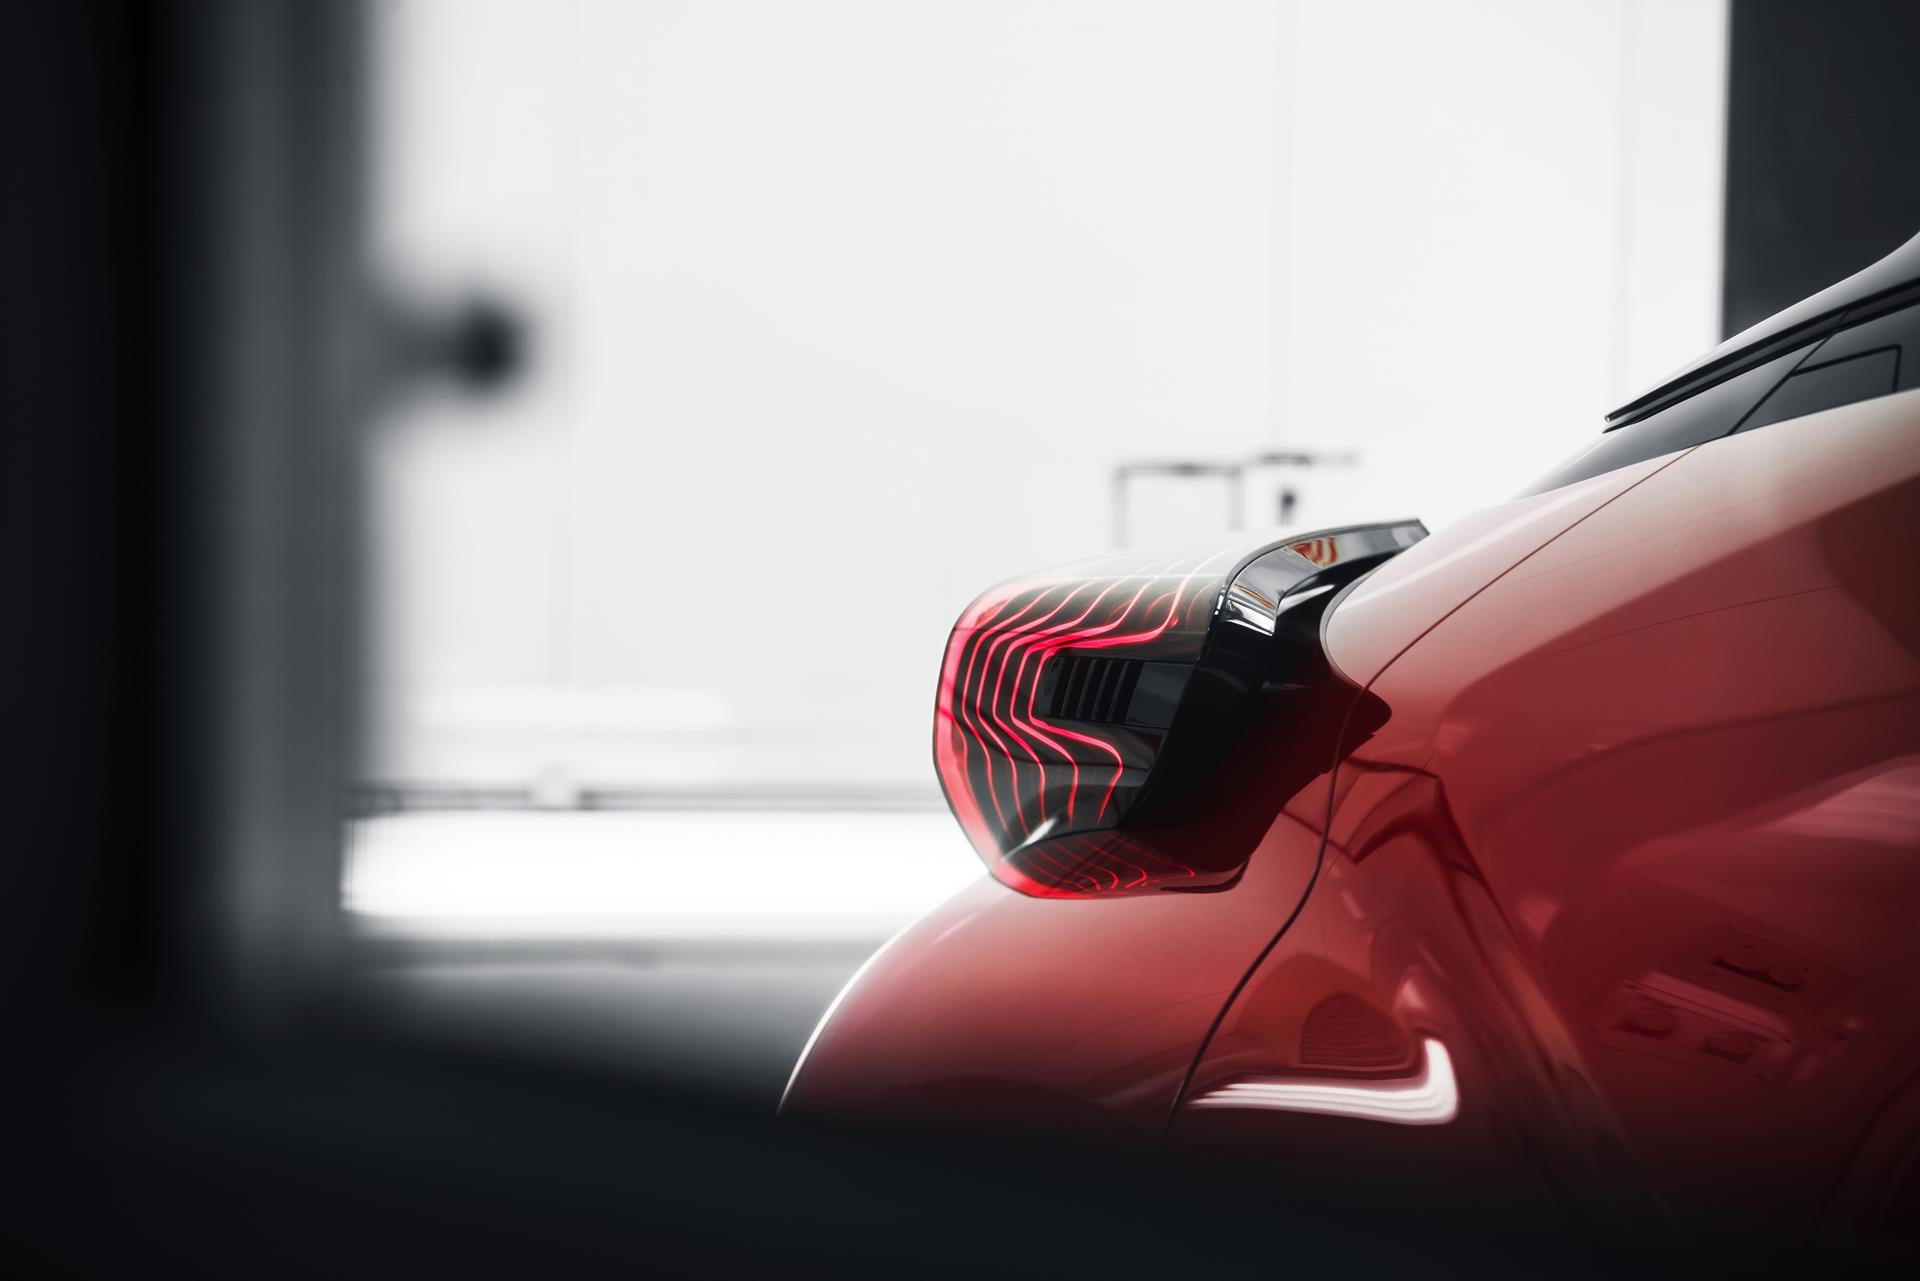 2015 Scion C-HR Concept